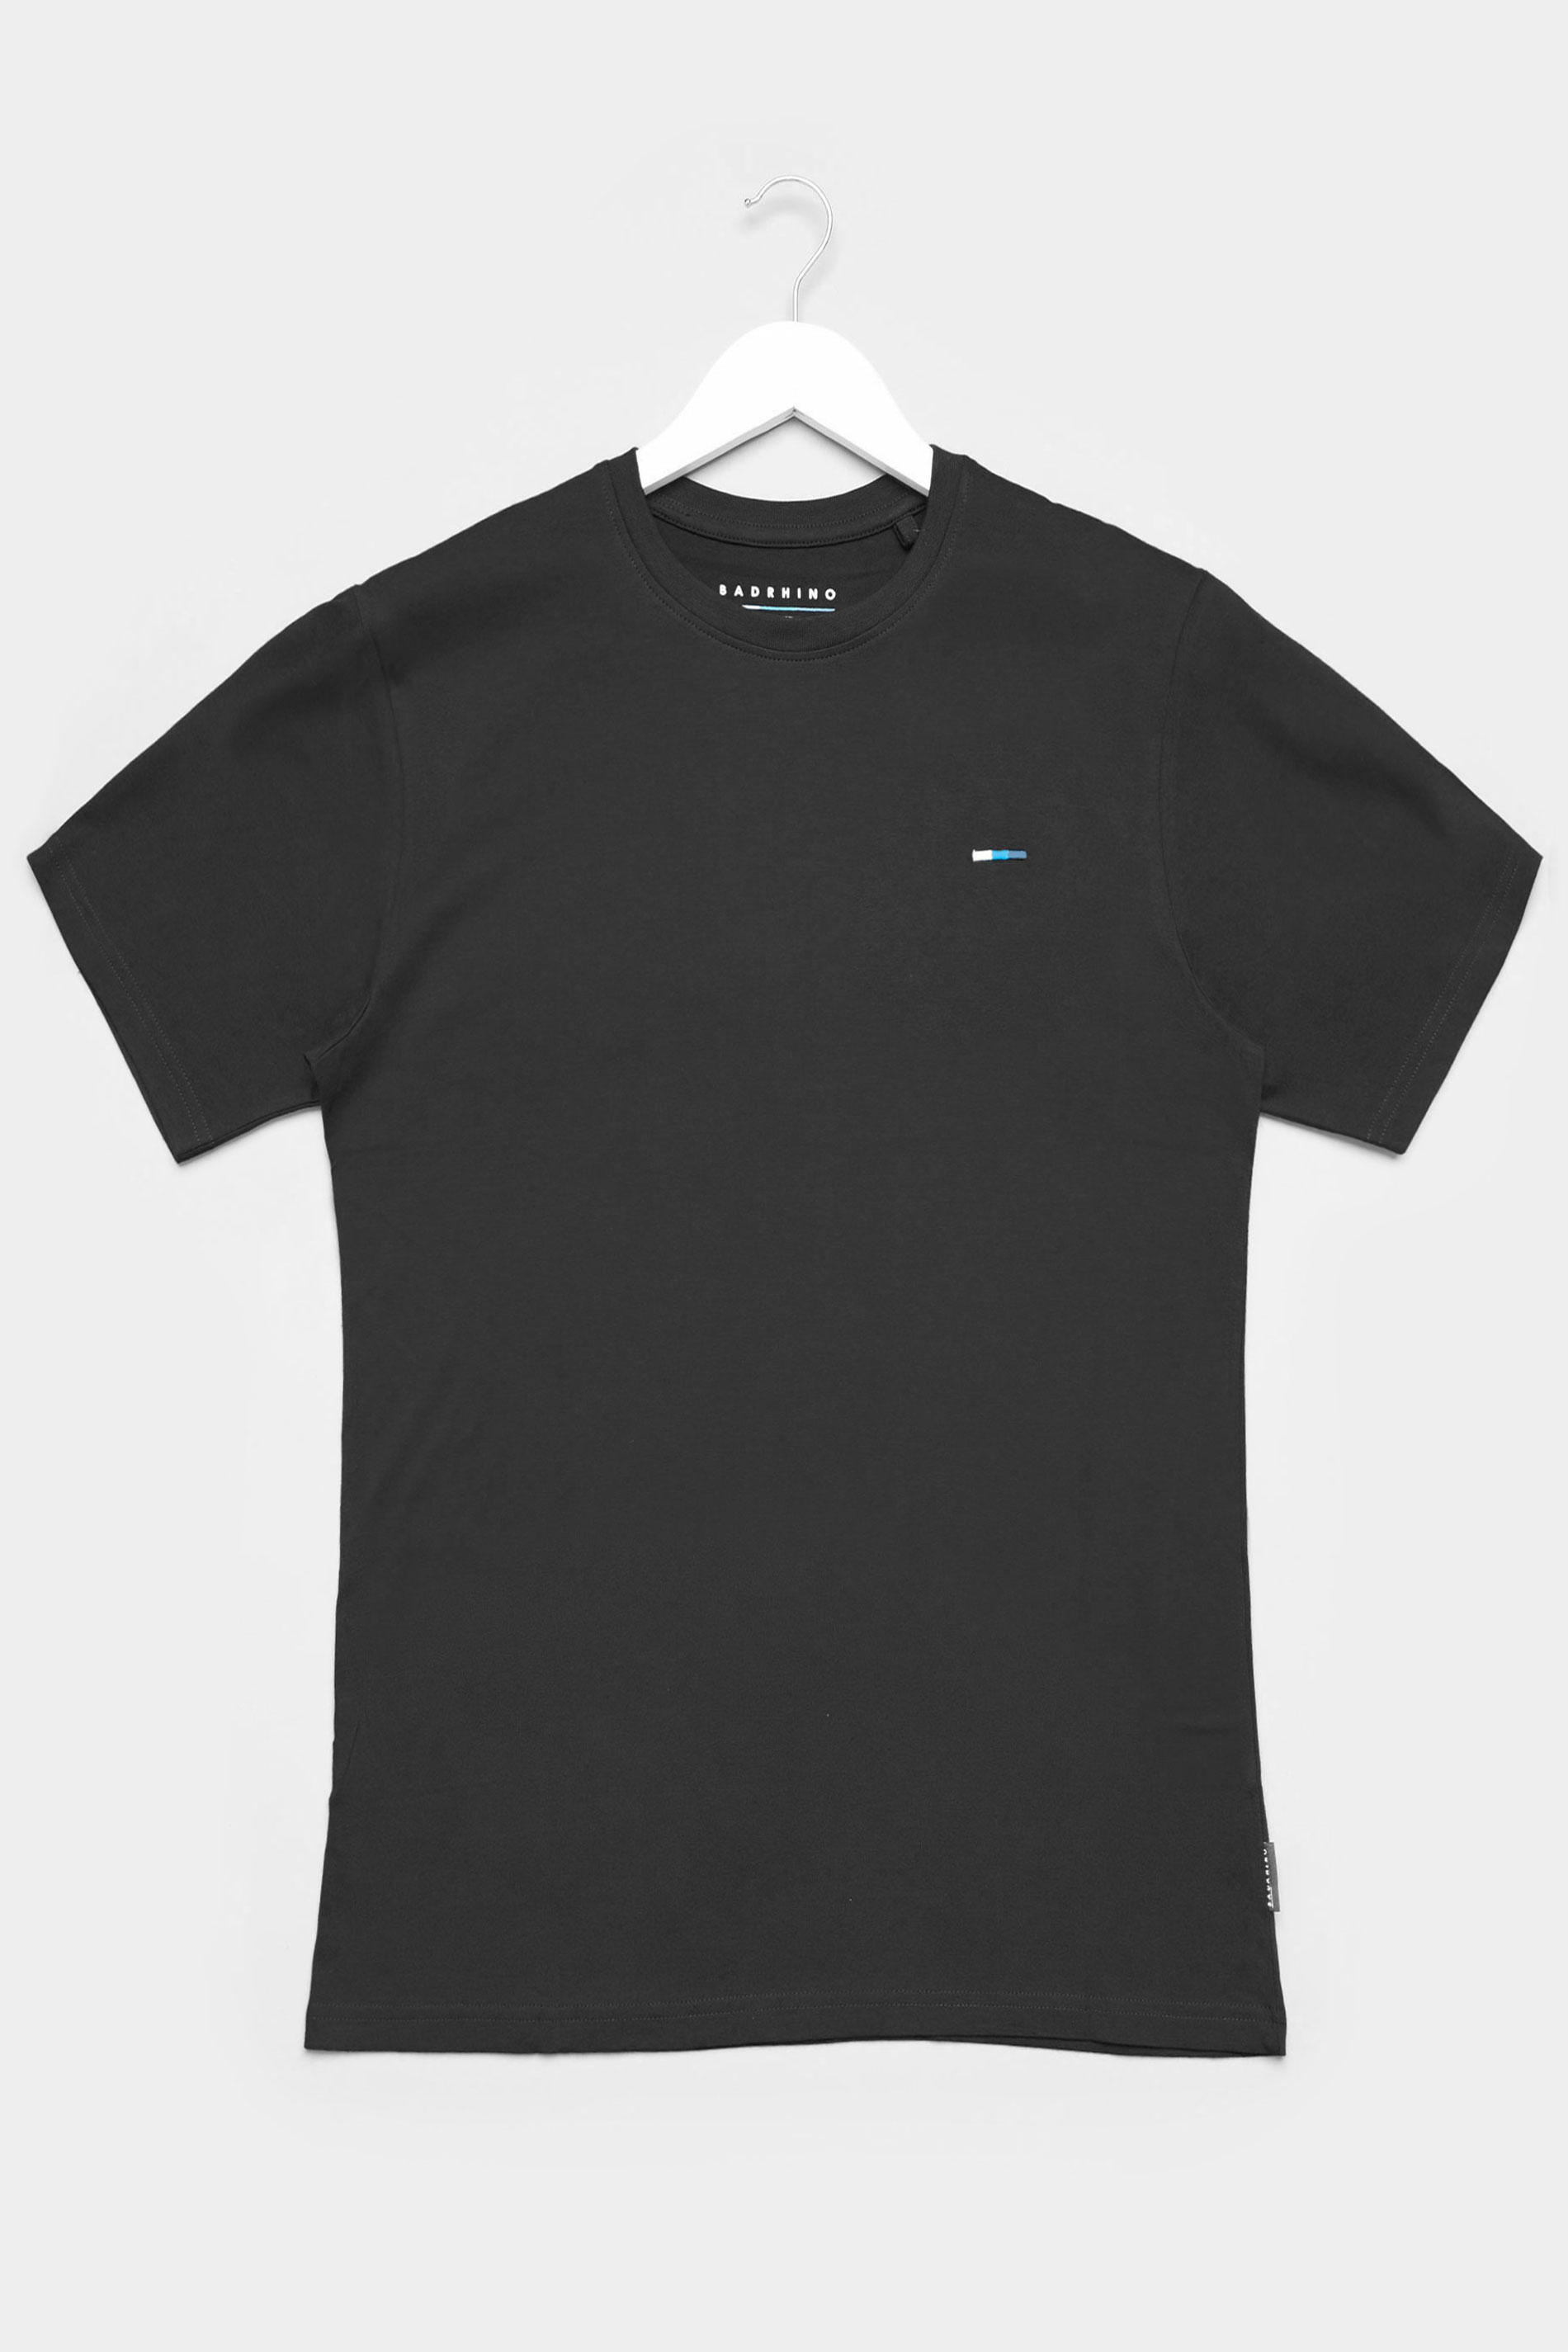 BadRhino Black Plain T-Shirt | BadRhino